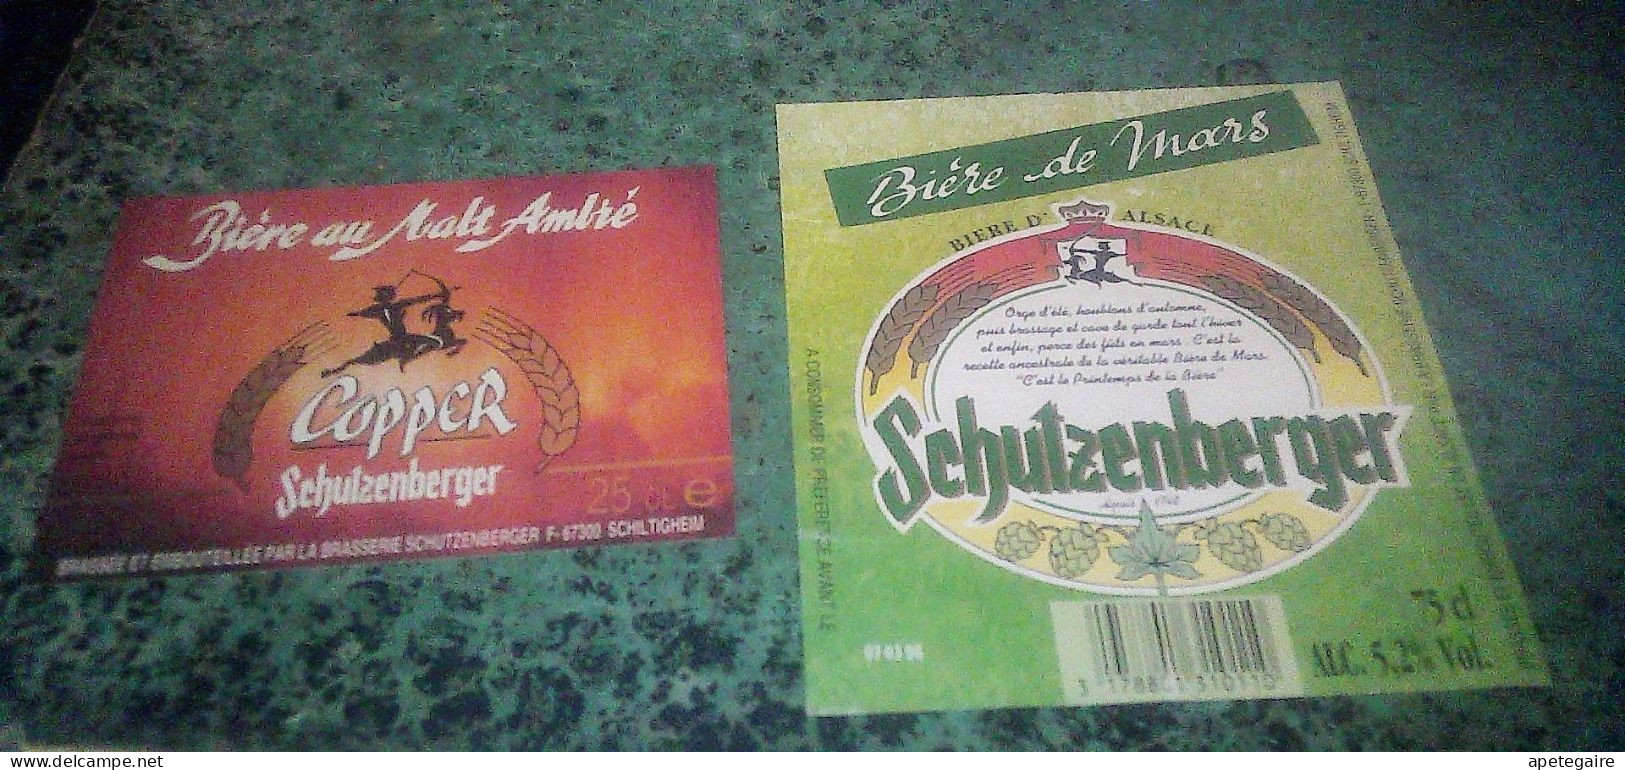 Schiltigheim Anciennes Etiquettes De Bière D'Alsace  Lot De 2 Différentes Brasserie Schutzenberger Coopet & De Mars - Beer